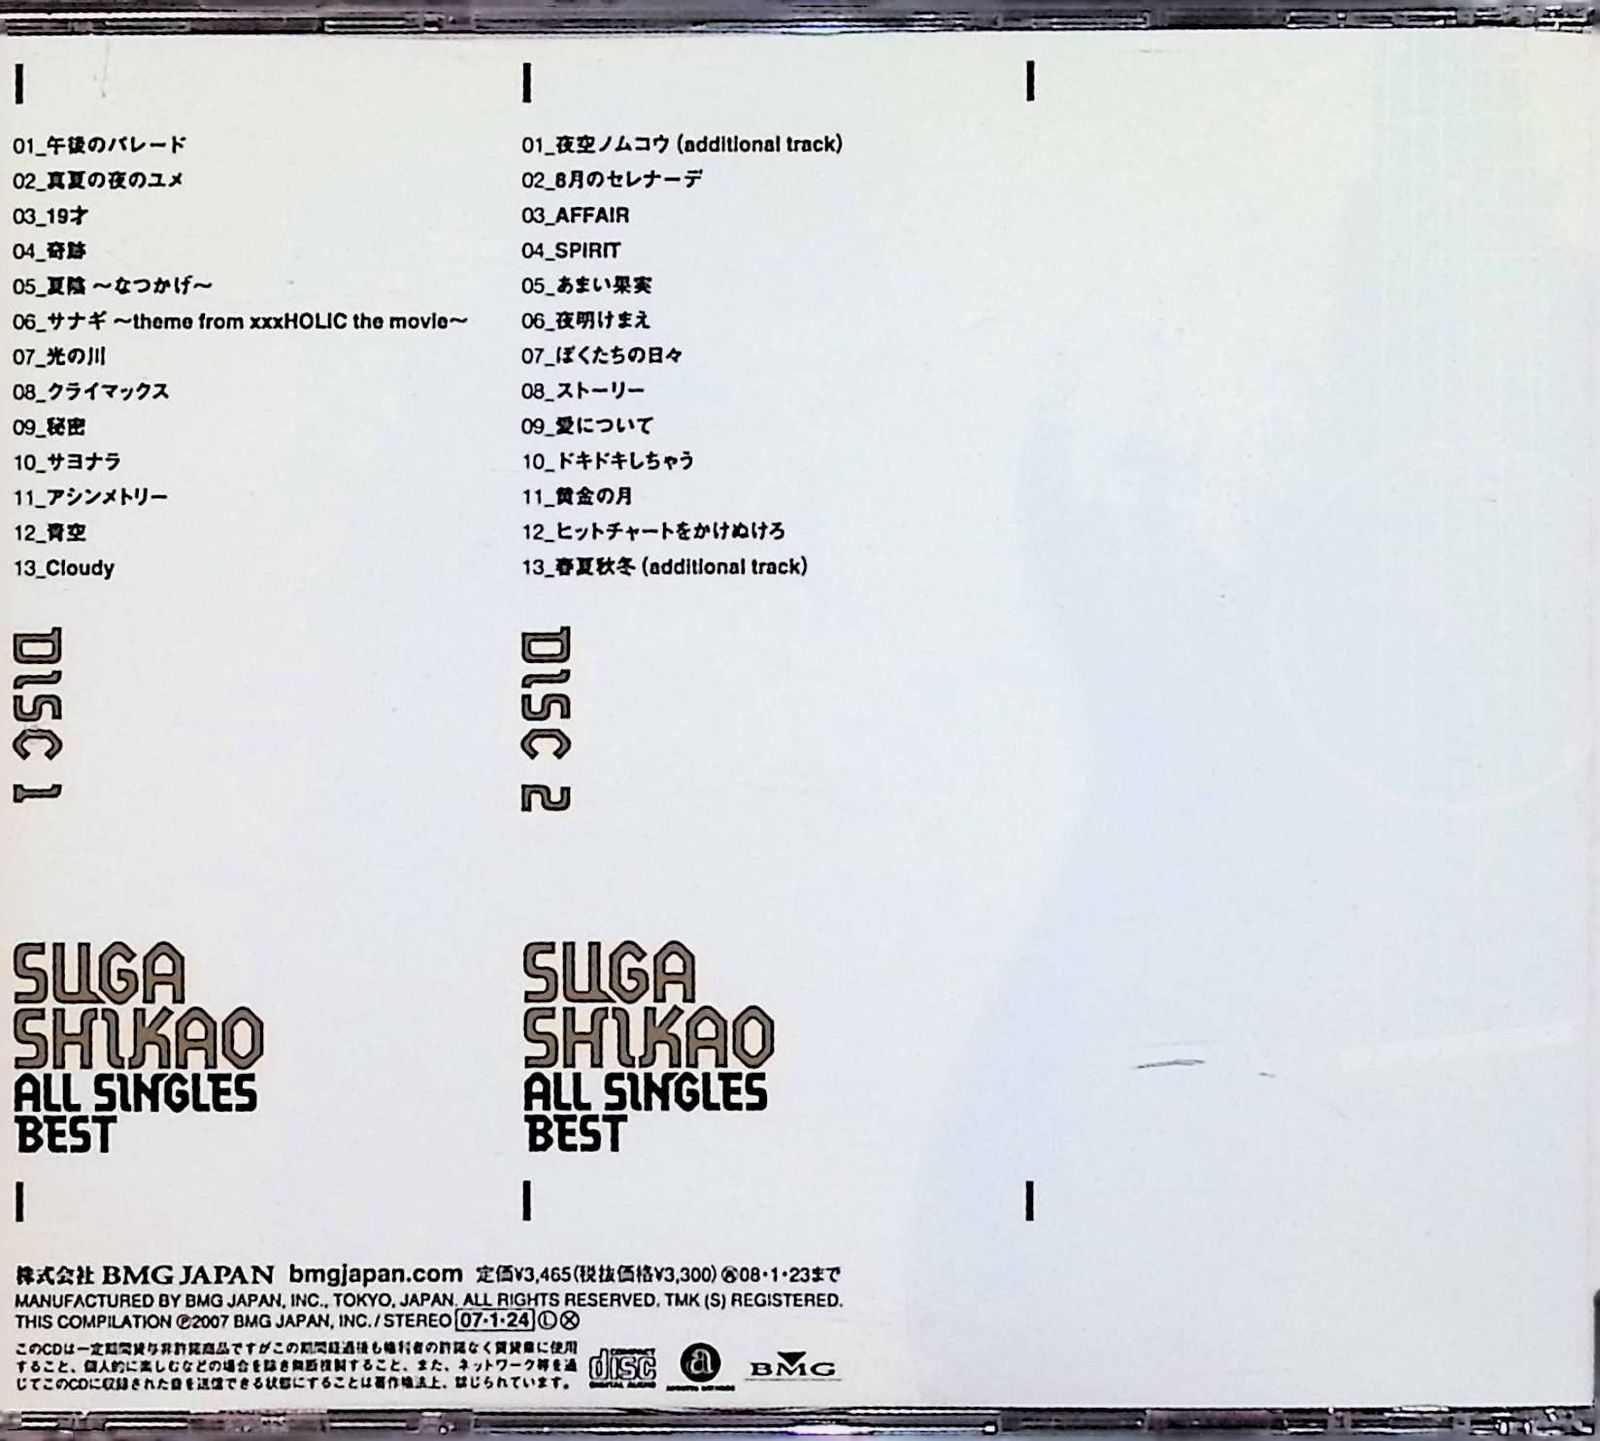 ALL SINGLES BEST (2枚組) / スガシカオ (CD)